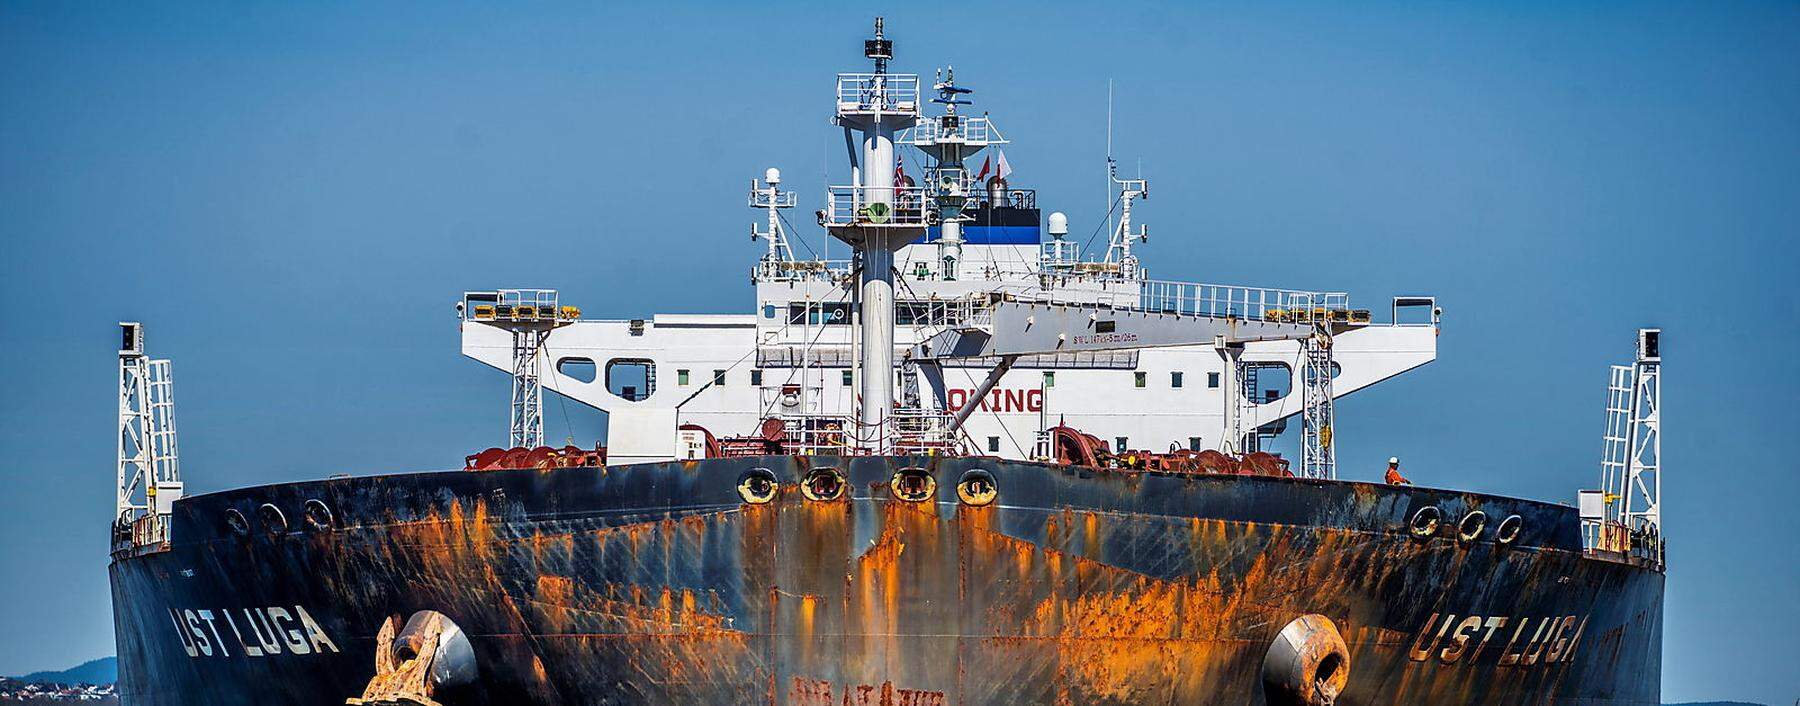 Greenpeace wirft sich in Schlauchbooten vor Tanker voll russischem Öl. Die großen Versicherer könnten deutlich mehr bewegen. 